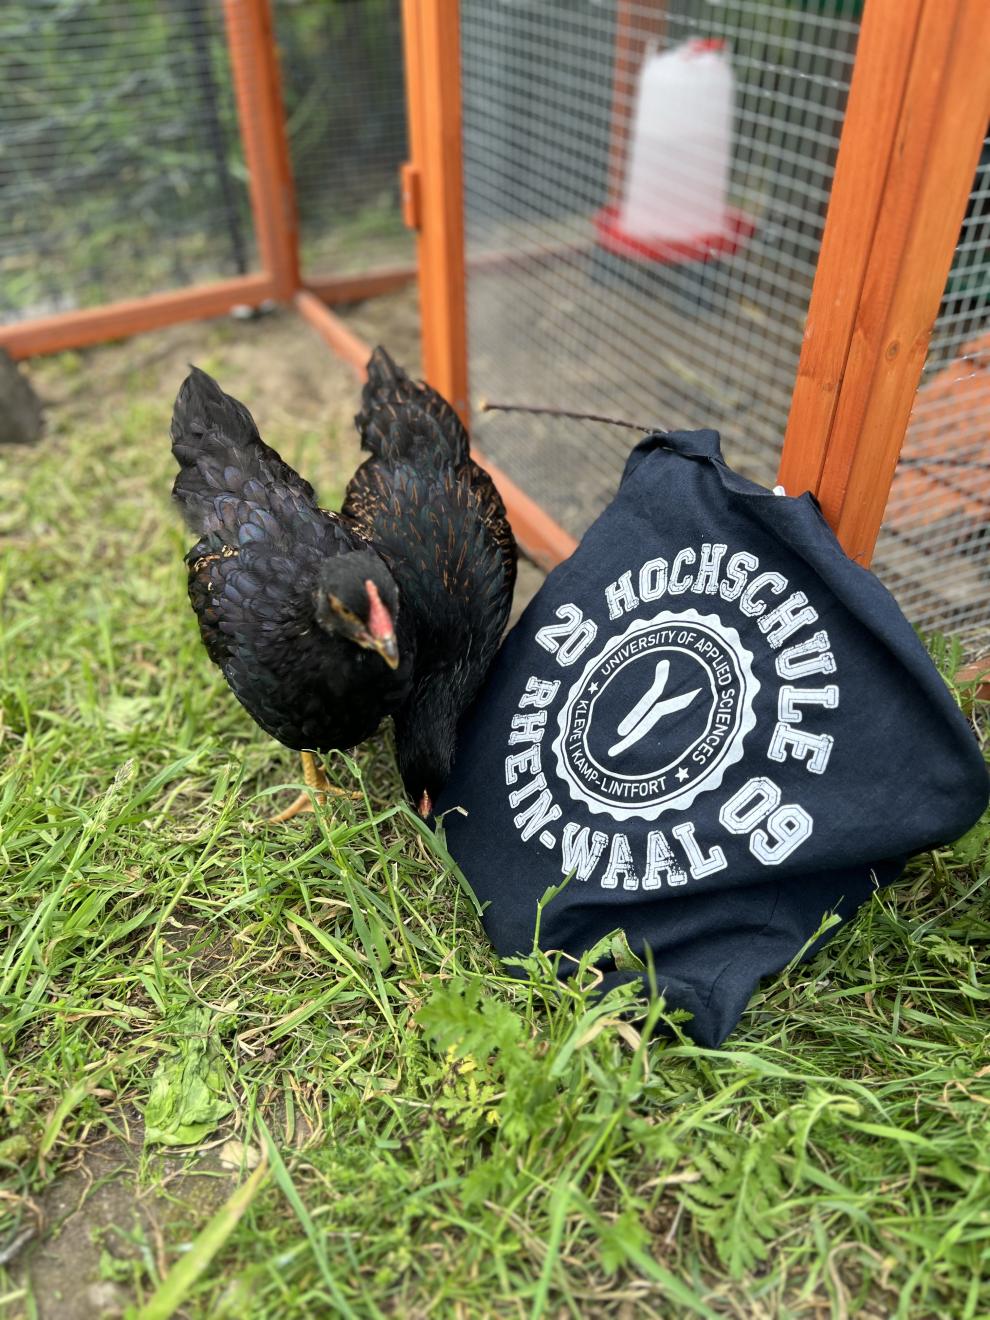 Ein schwarzes Huhn steht im Gras neben einem schwarzen T-Shirt mit weißem Text. Der Text auf dem T-Shirt lautet „HOCHSCHULE RHEIN-WAAL 09“ und „UNIVERSITY OF APPLIED SCIENCES“ mit weiteren Details. Das Huhn scheint im Gras zu picken.